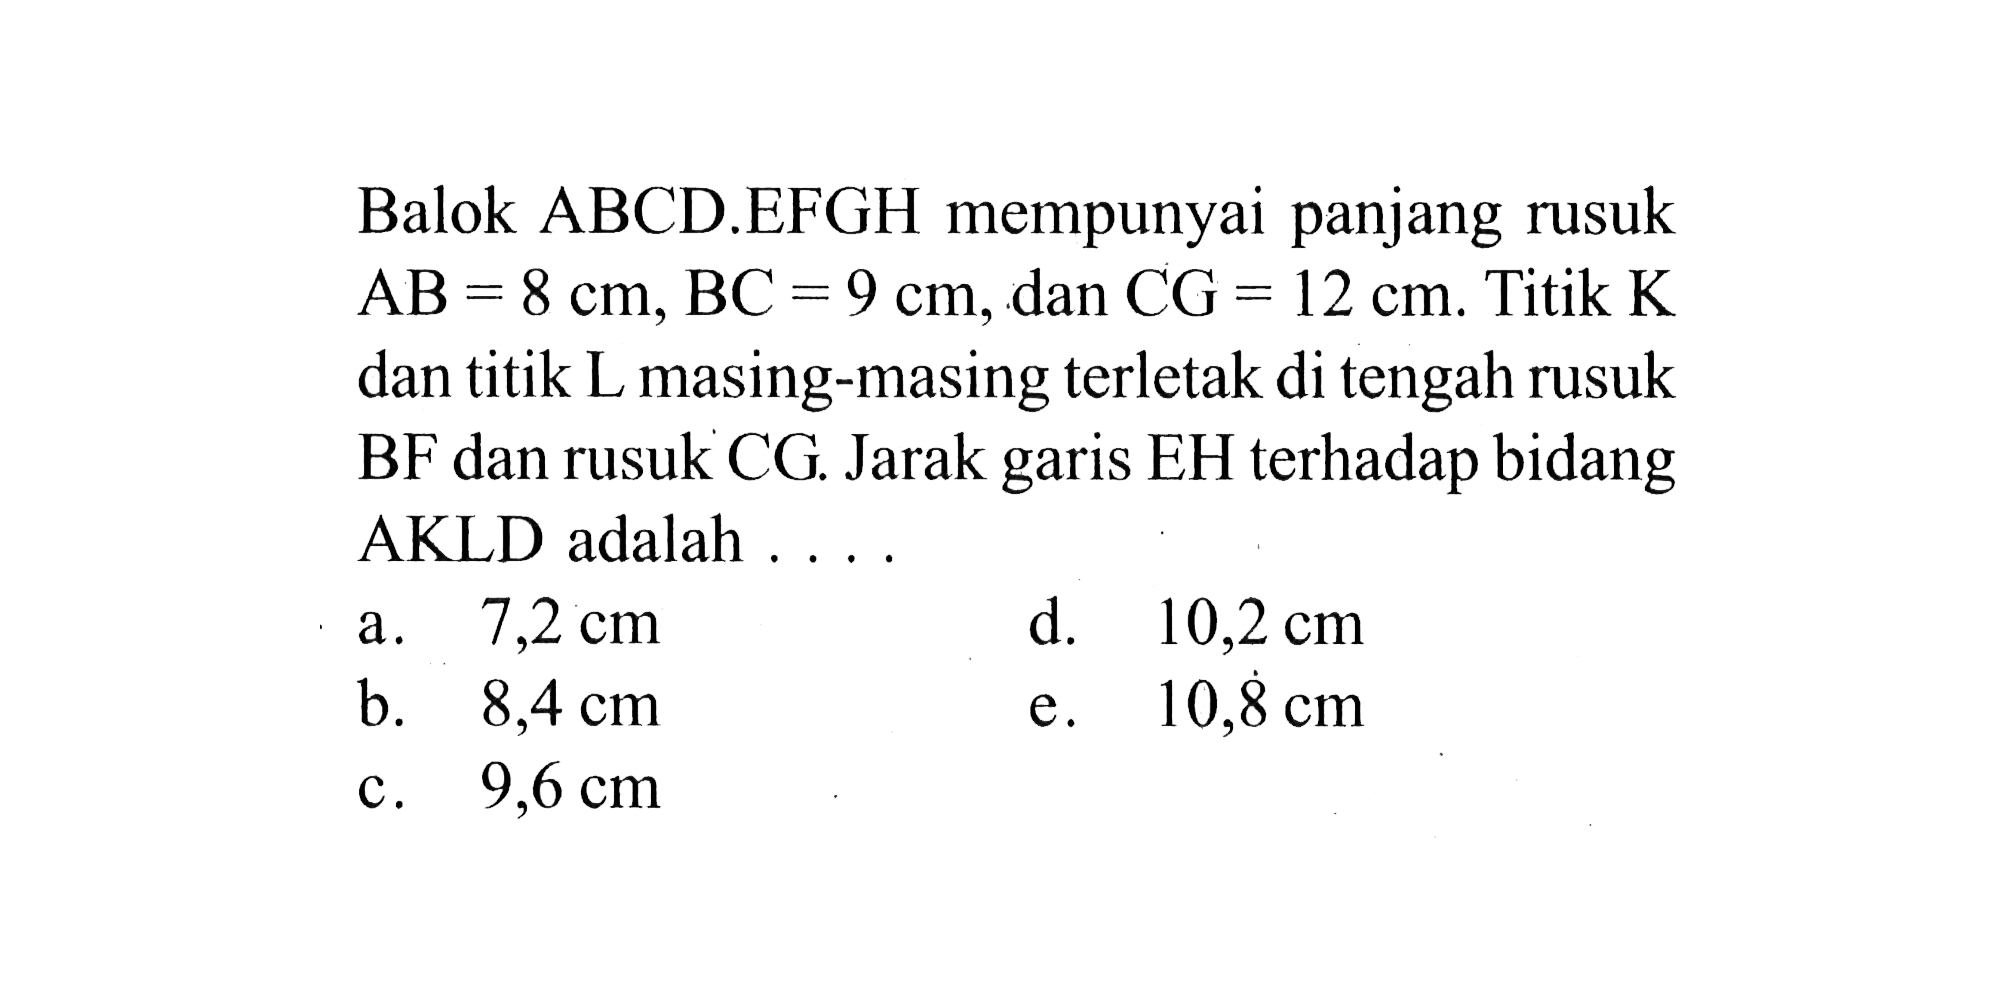 Balok ABCD.EFGH mempunyai panjang rusuk AB = 8 cm, BC = 9 cm, dan CG = 12 cm. Titik K dan titik L masing-masing terletak di tengah rusuk BF dan rusuk CG. Jarak garis EH terhadap bidang AKLD adalah . . . .